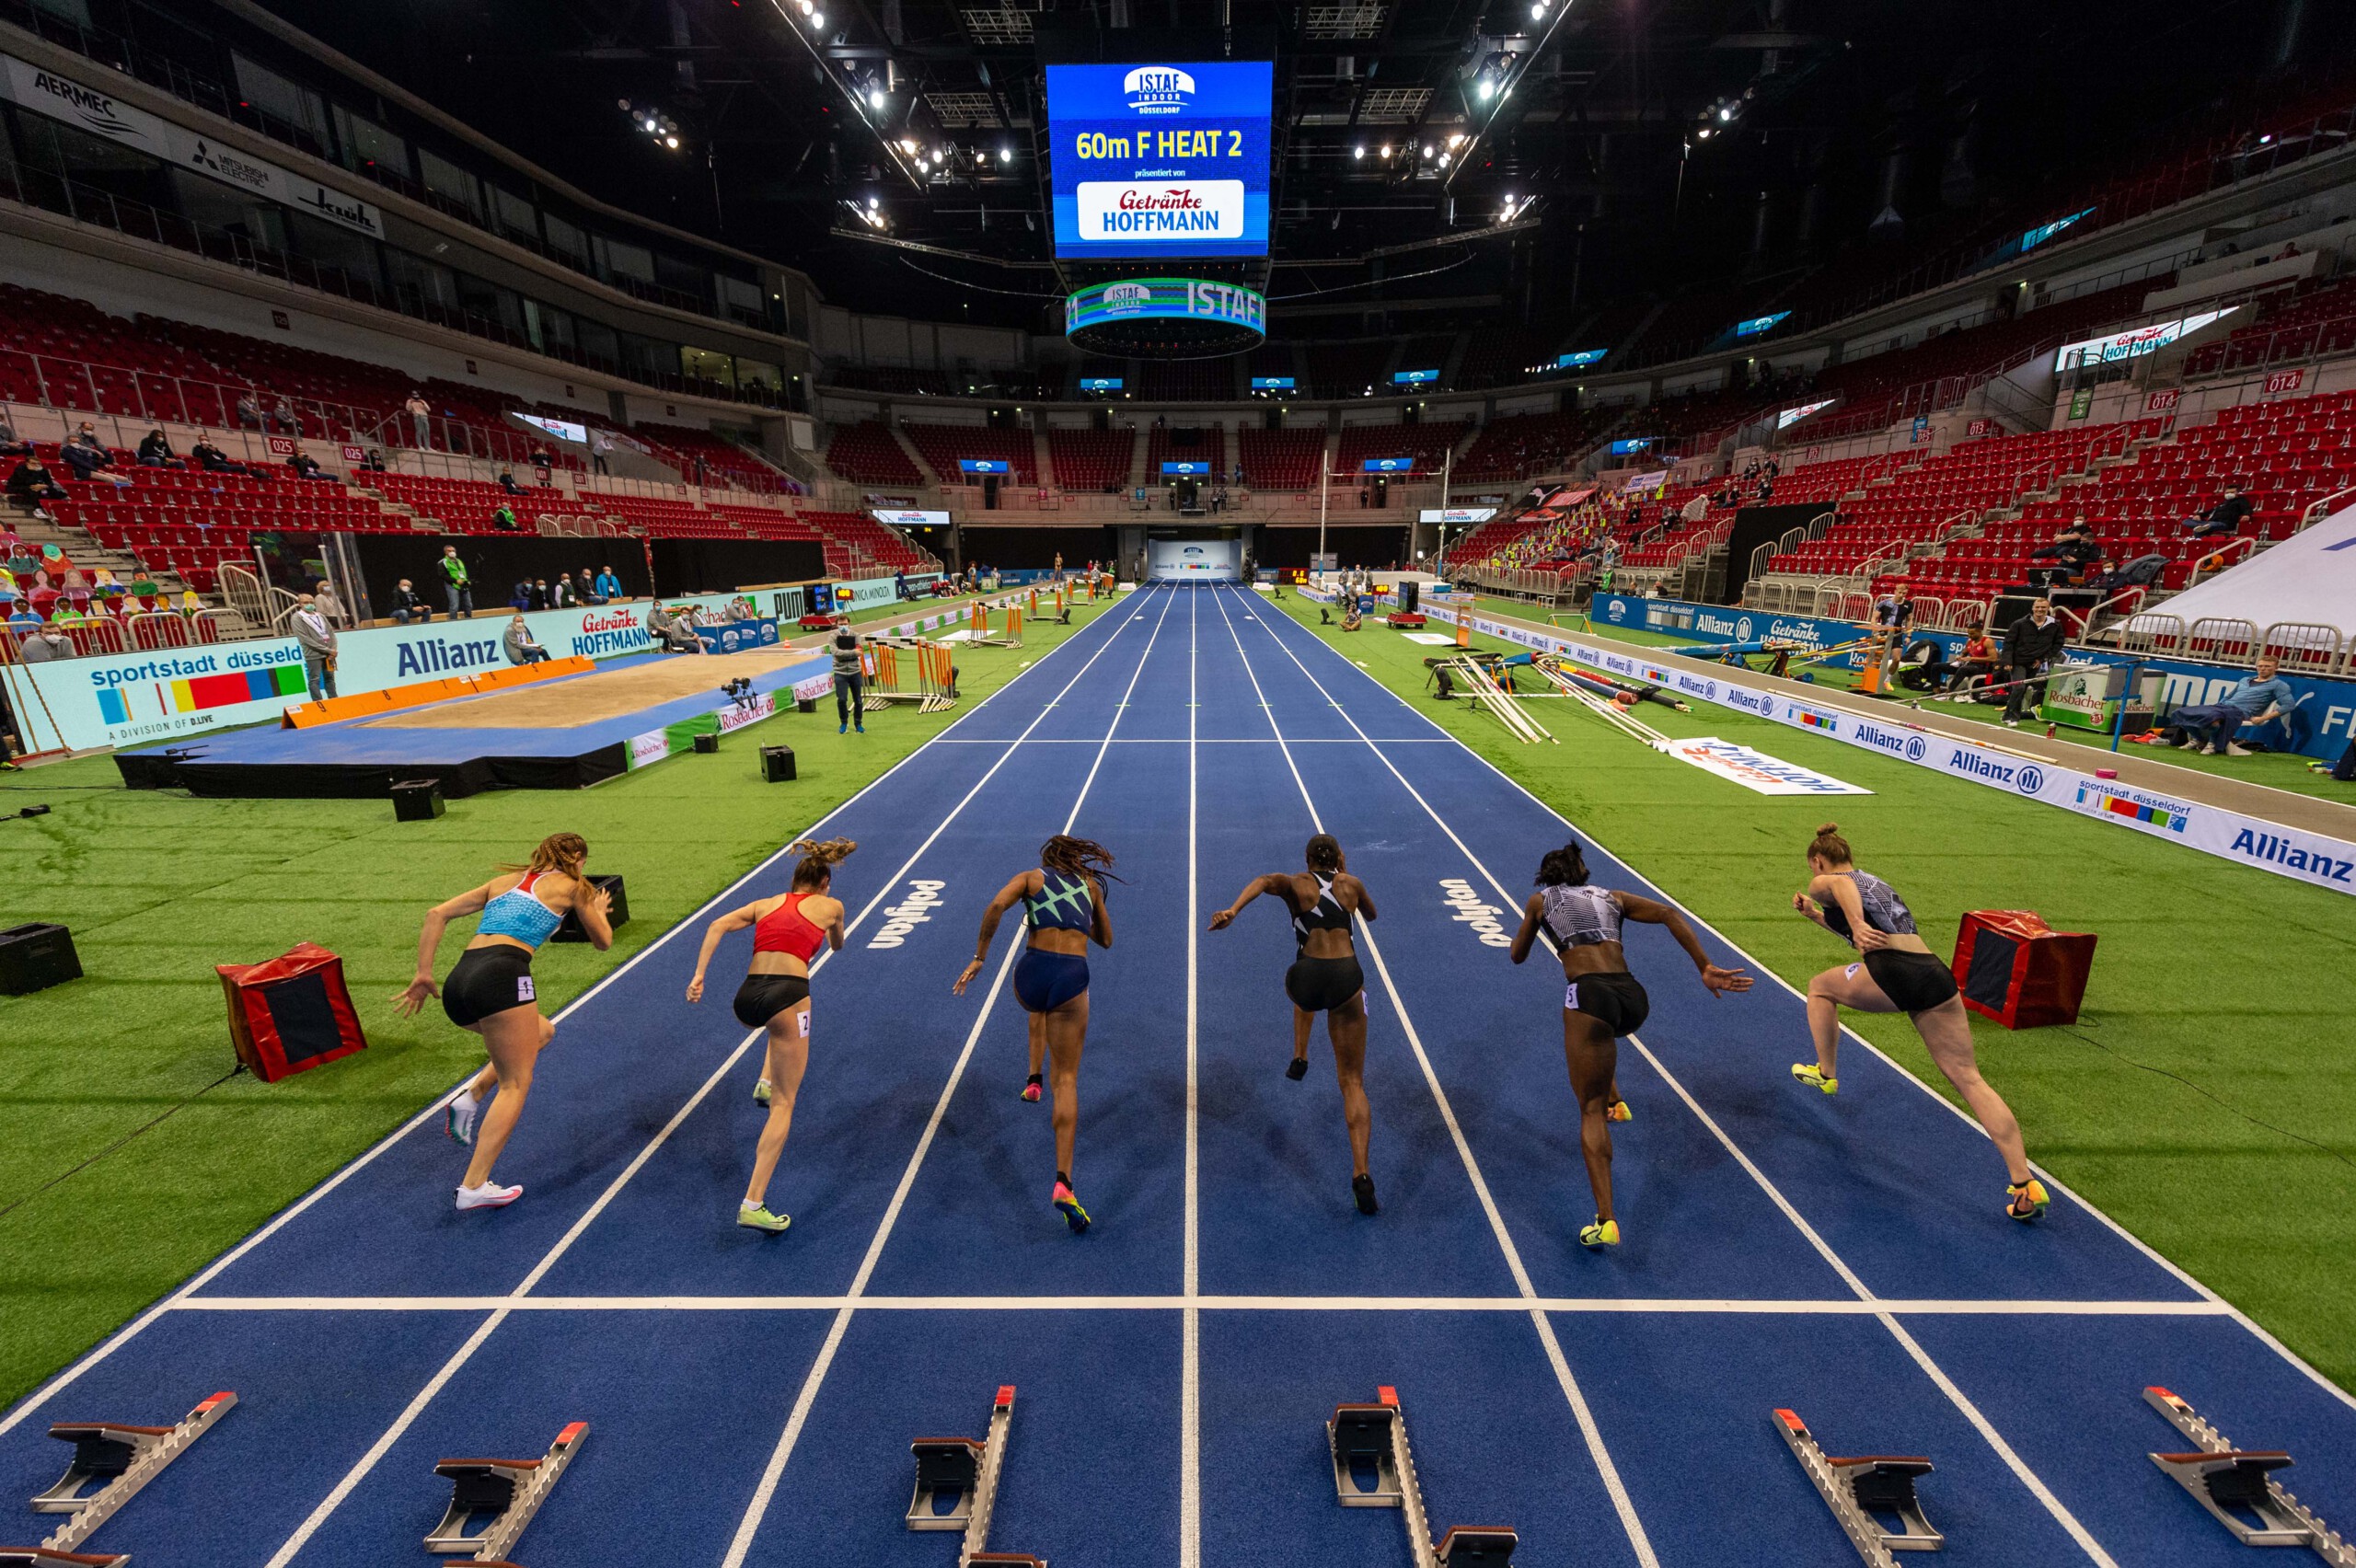 Leichtathletik-Mitglieder kommen günstig zum ISTAF Indoor Meeting